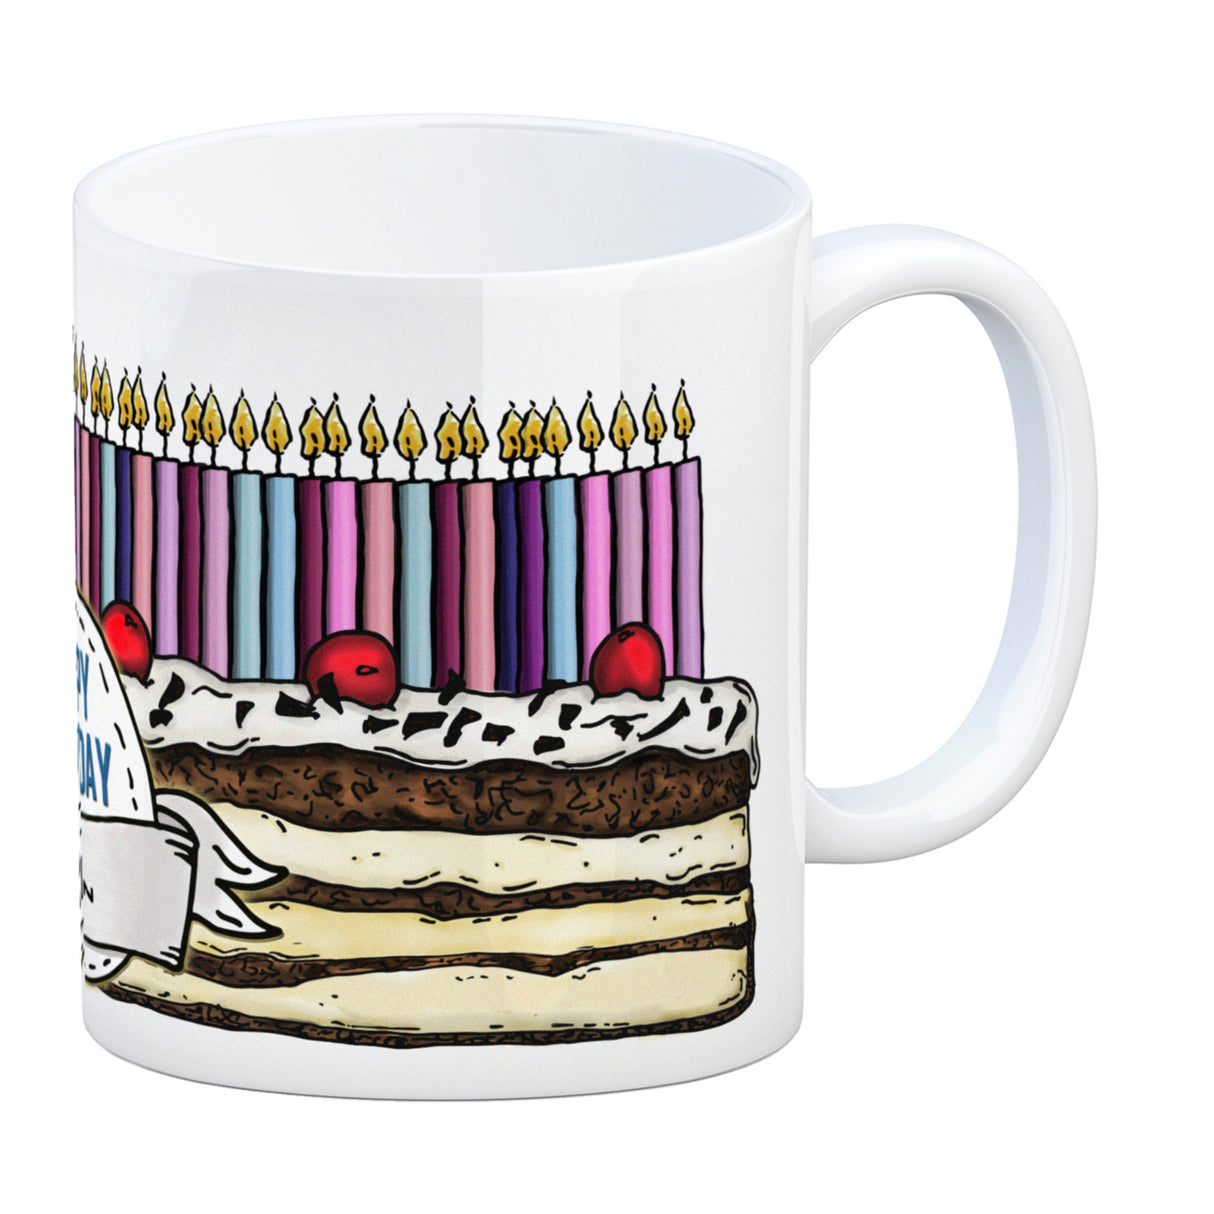 Geburtstagstorte Kaffeebecher zum 50. Geburtstag mit 50 Kerzen